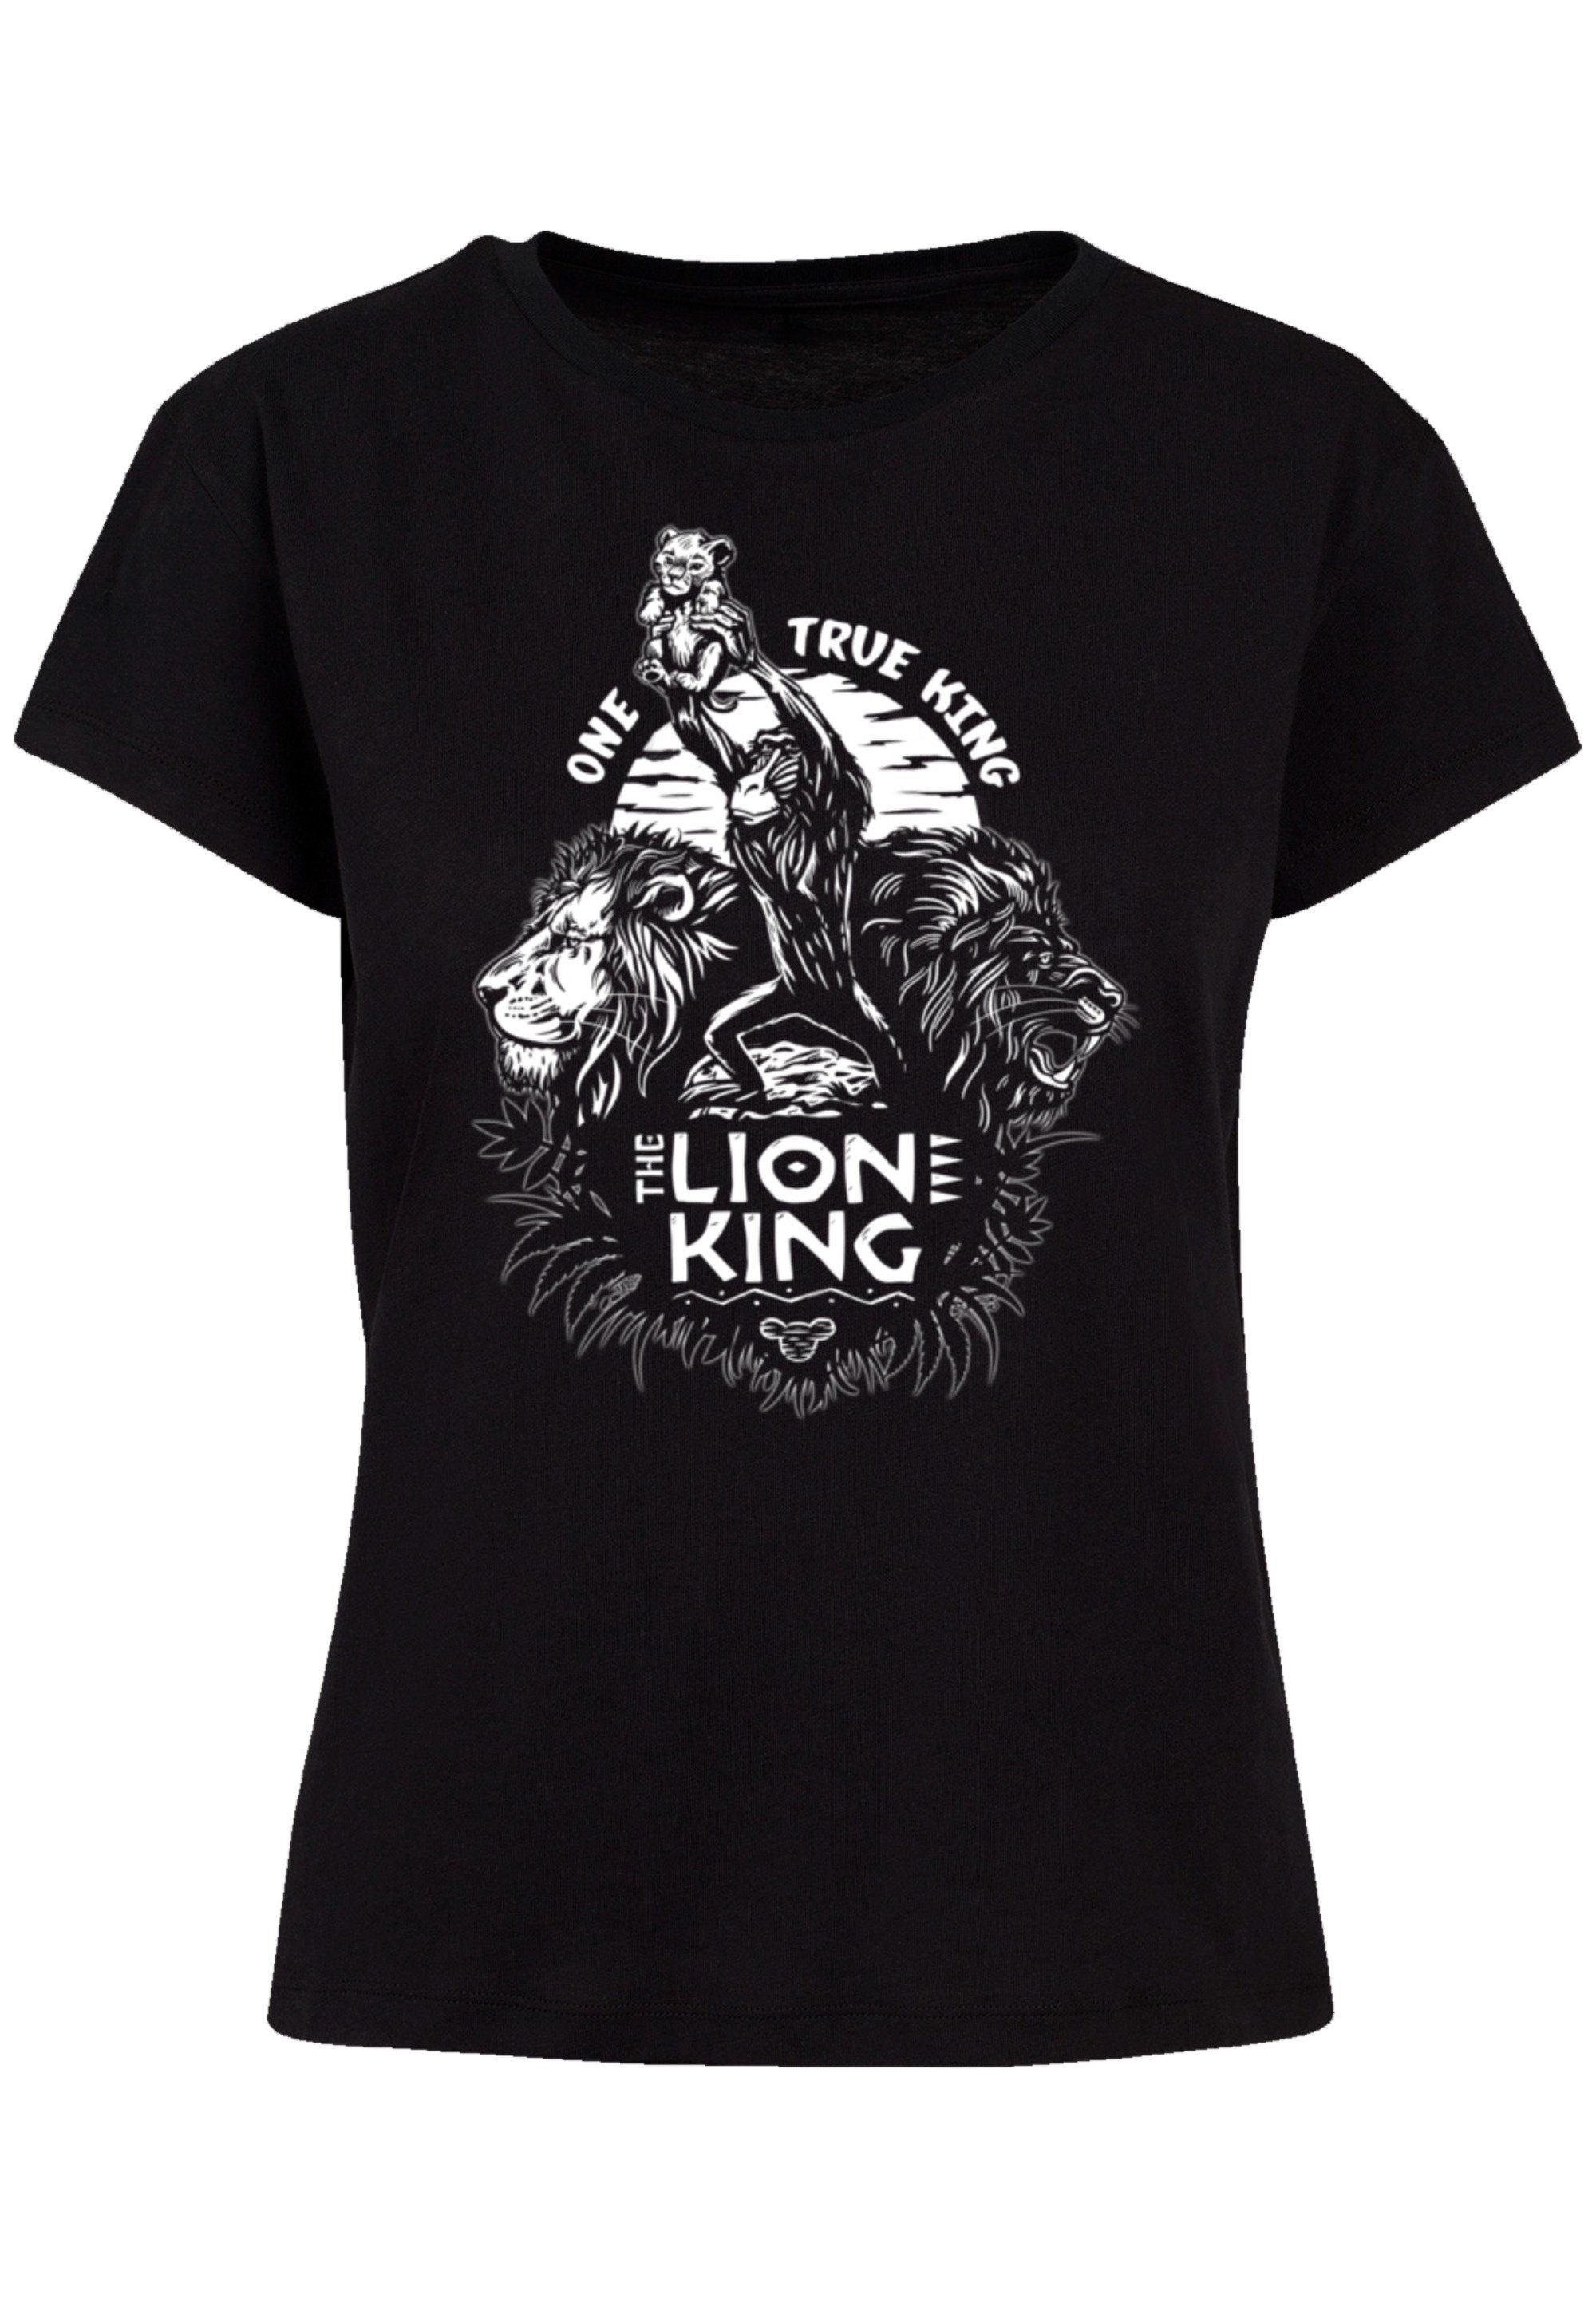 F4NT4STIC T-Shirt König Disney True Qualität One King Premium Löwen der